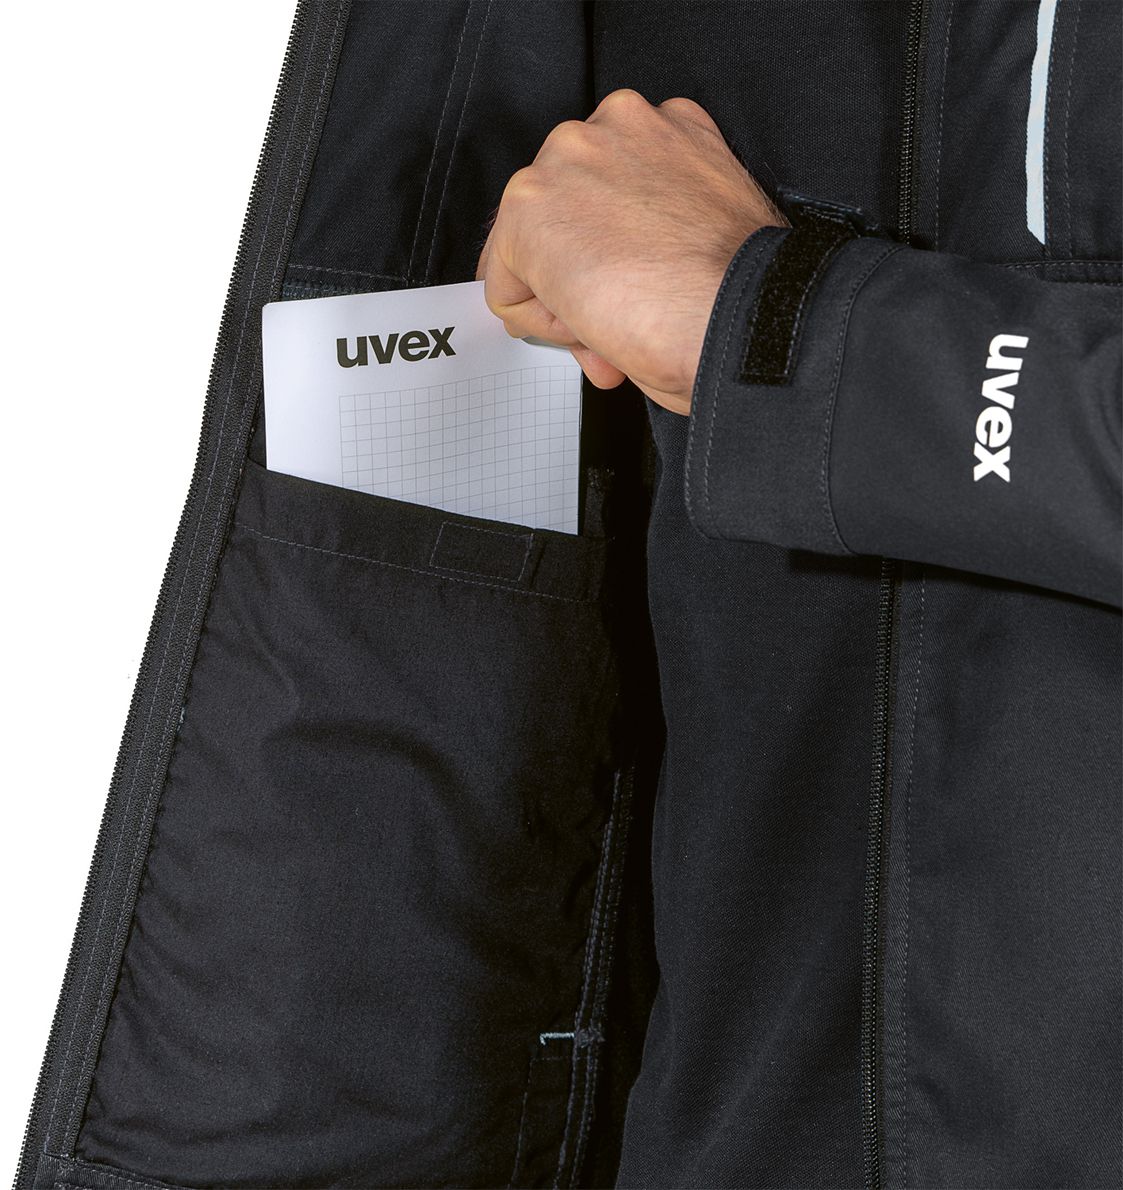 uvex tune-up Hybridjacke - robuste & flexible Outdoor-Jacke für die Arbeit - Schwarz - 3XL